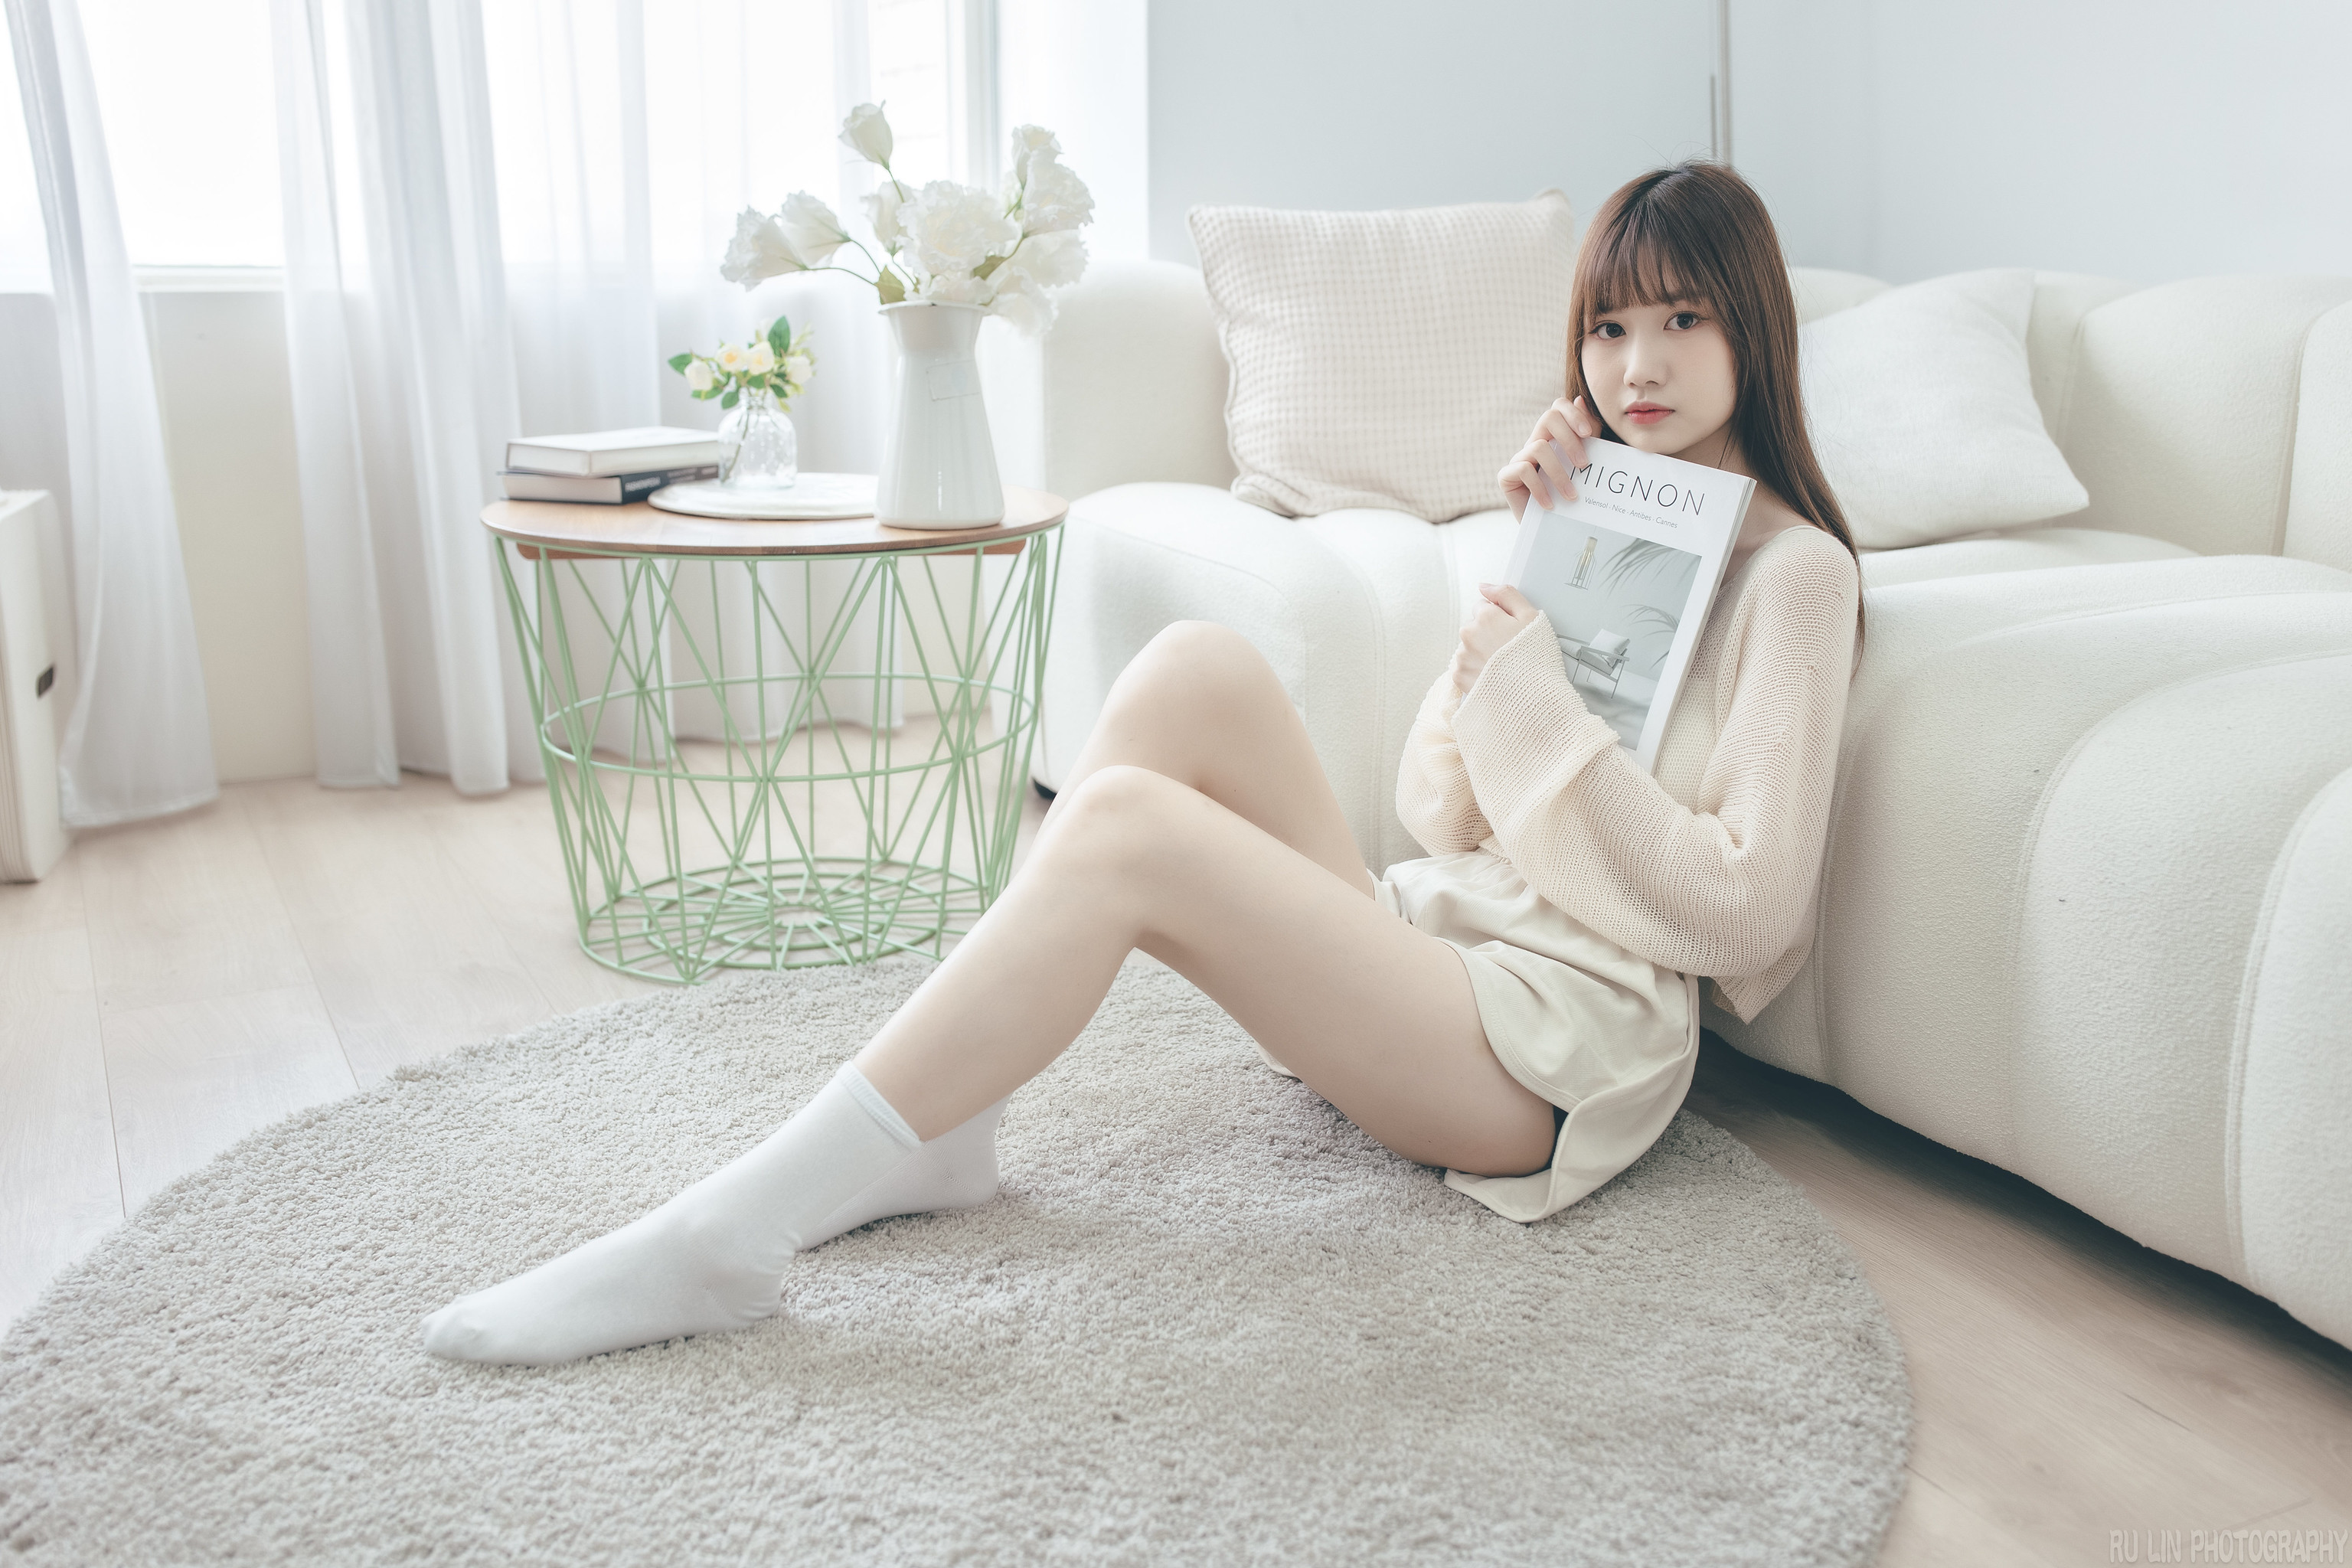 Ru Lin Women Asian Brunette Casual Bedroom Legs 3072x2048